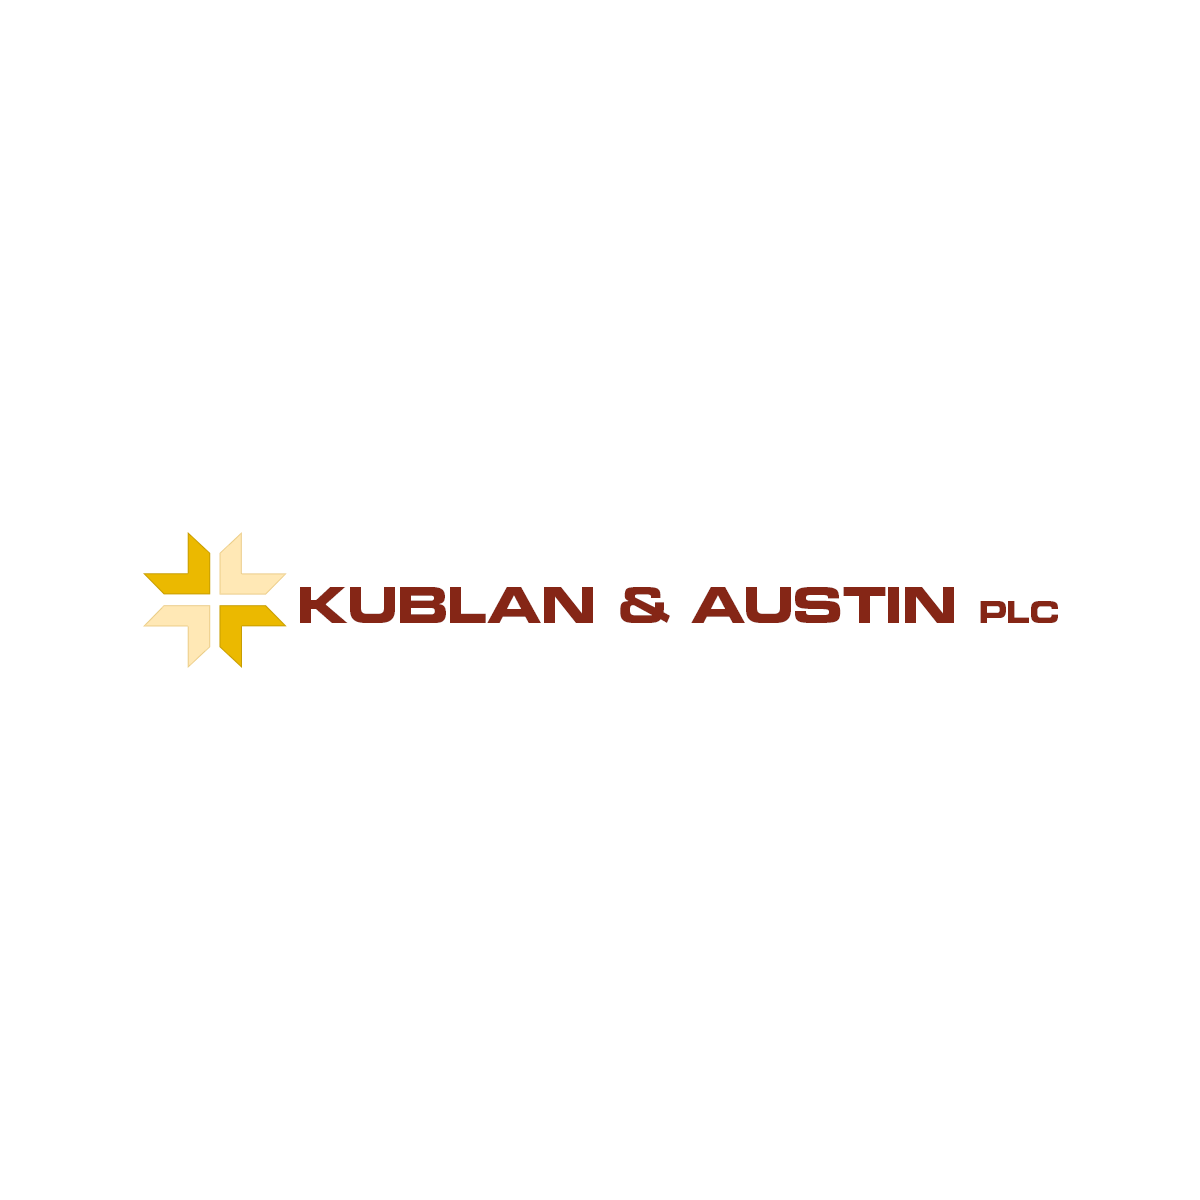 Kublan & Austin PLC